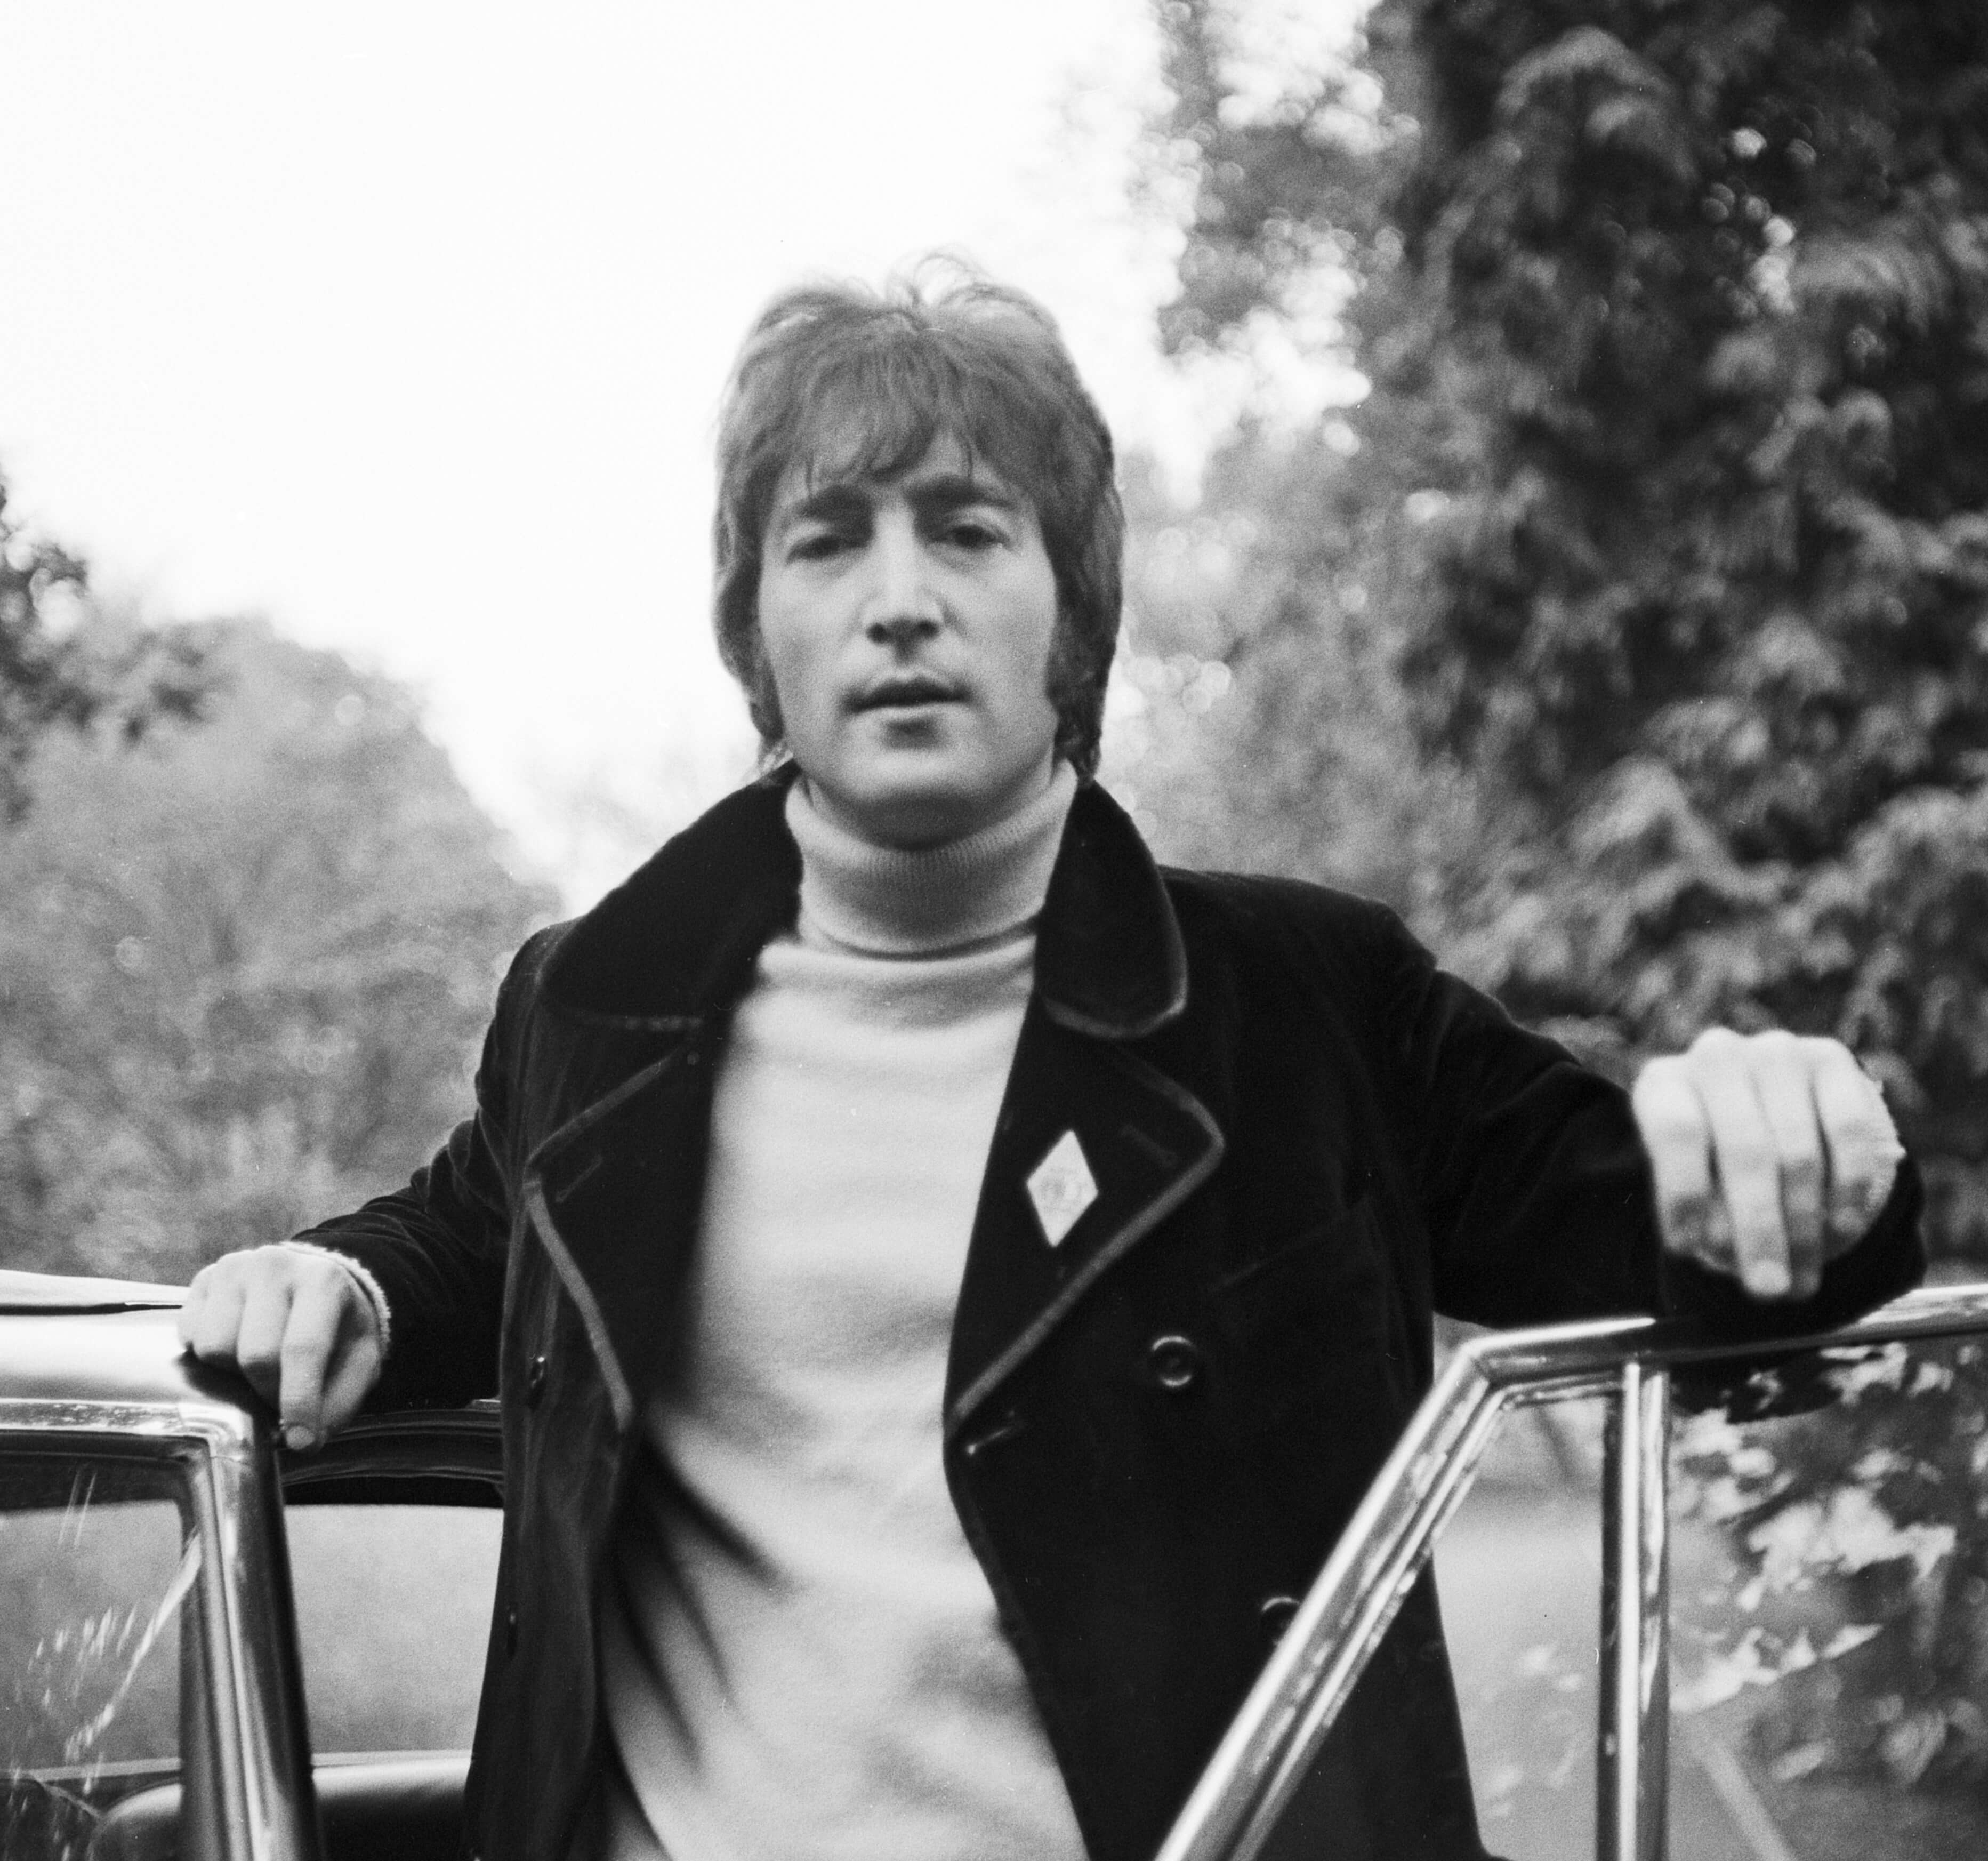 John Lennon and a car